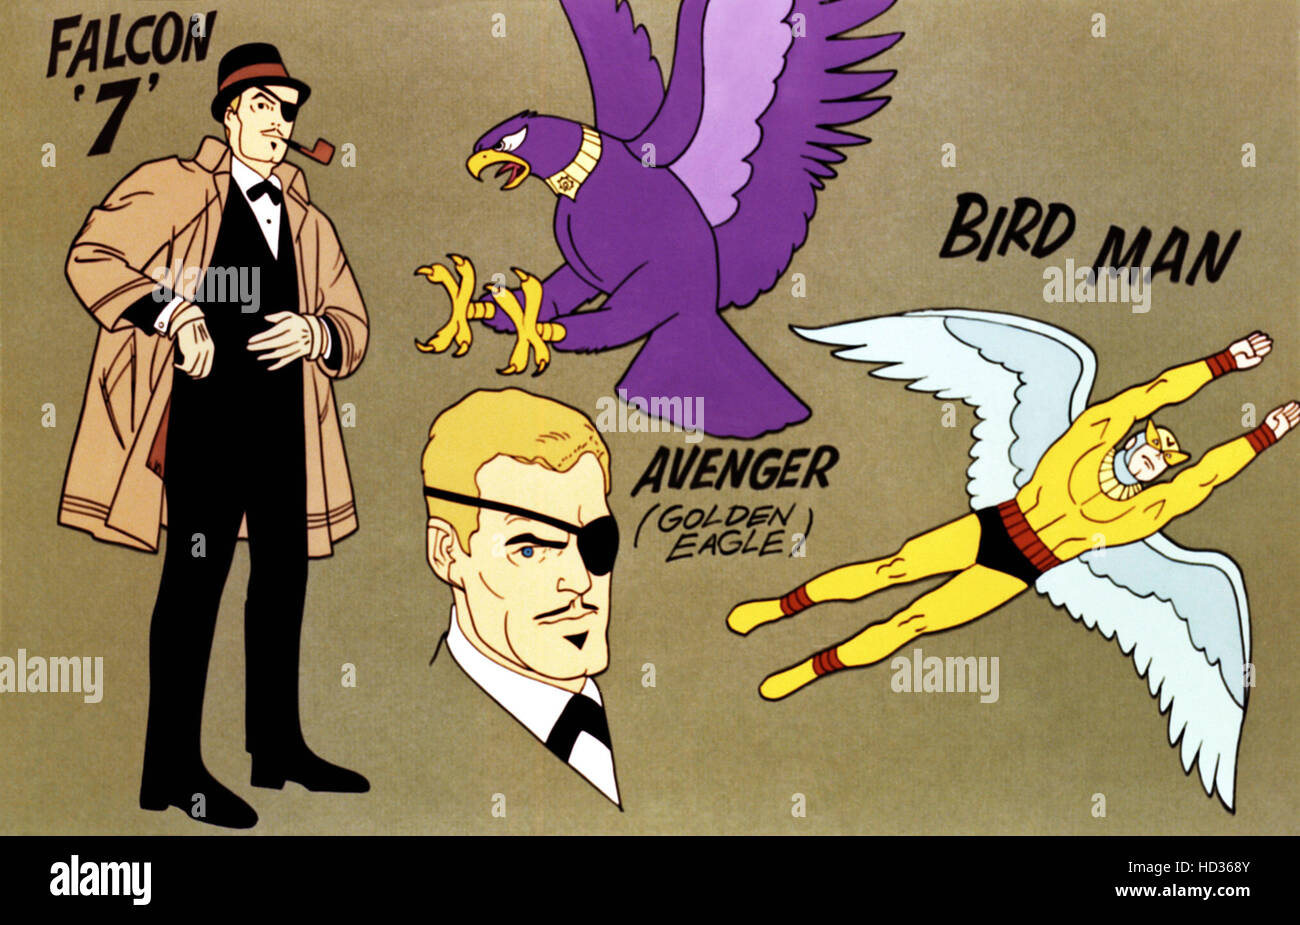 BIRDMAN E IL TRIO DI GALAXY, Falcon 7, Avenger (Golden Eagle), Birdman,  1967-69 Foto stock - Alamy